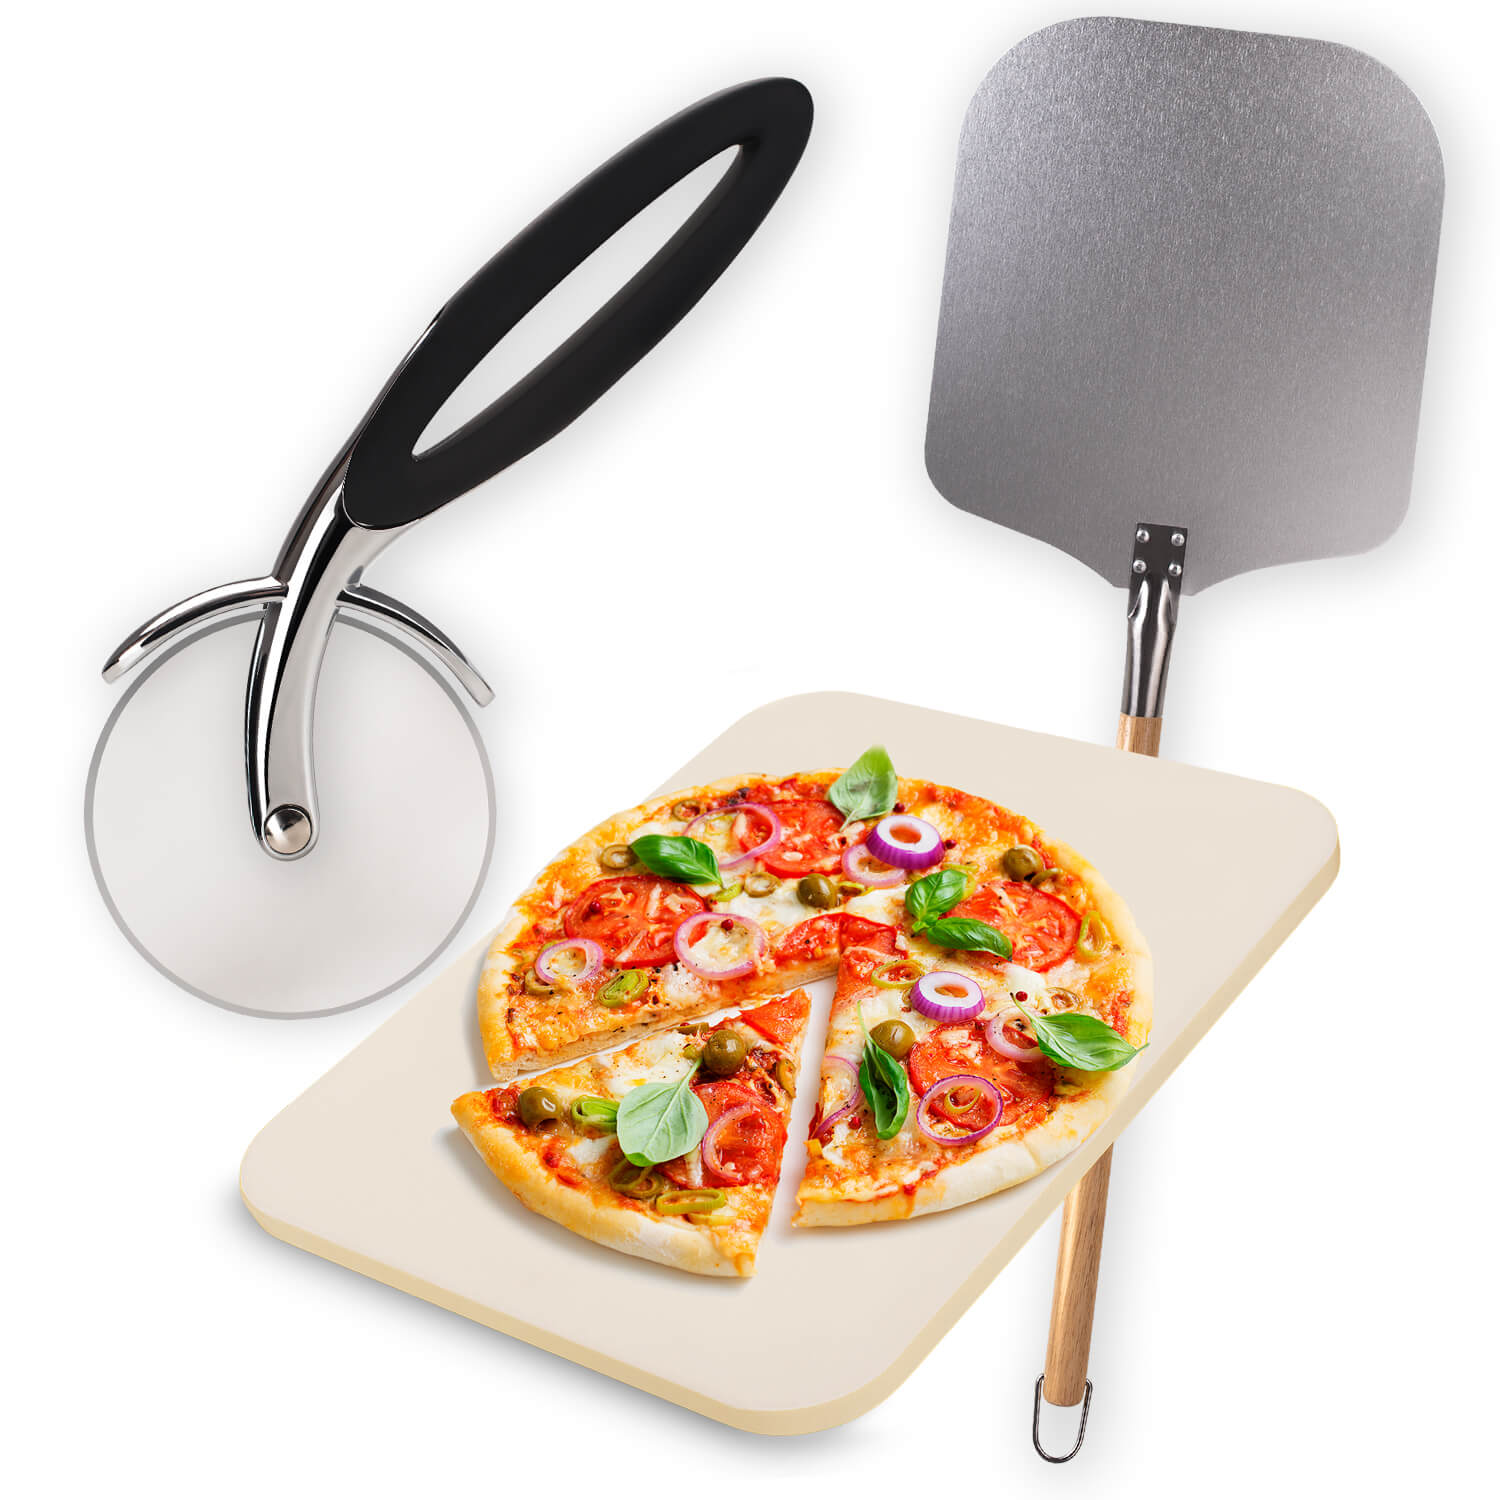 Eine von einem Pizzaschneider geschnittene Pizza auf einem Pizzastein, neben einem Pizzaschieber.